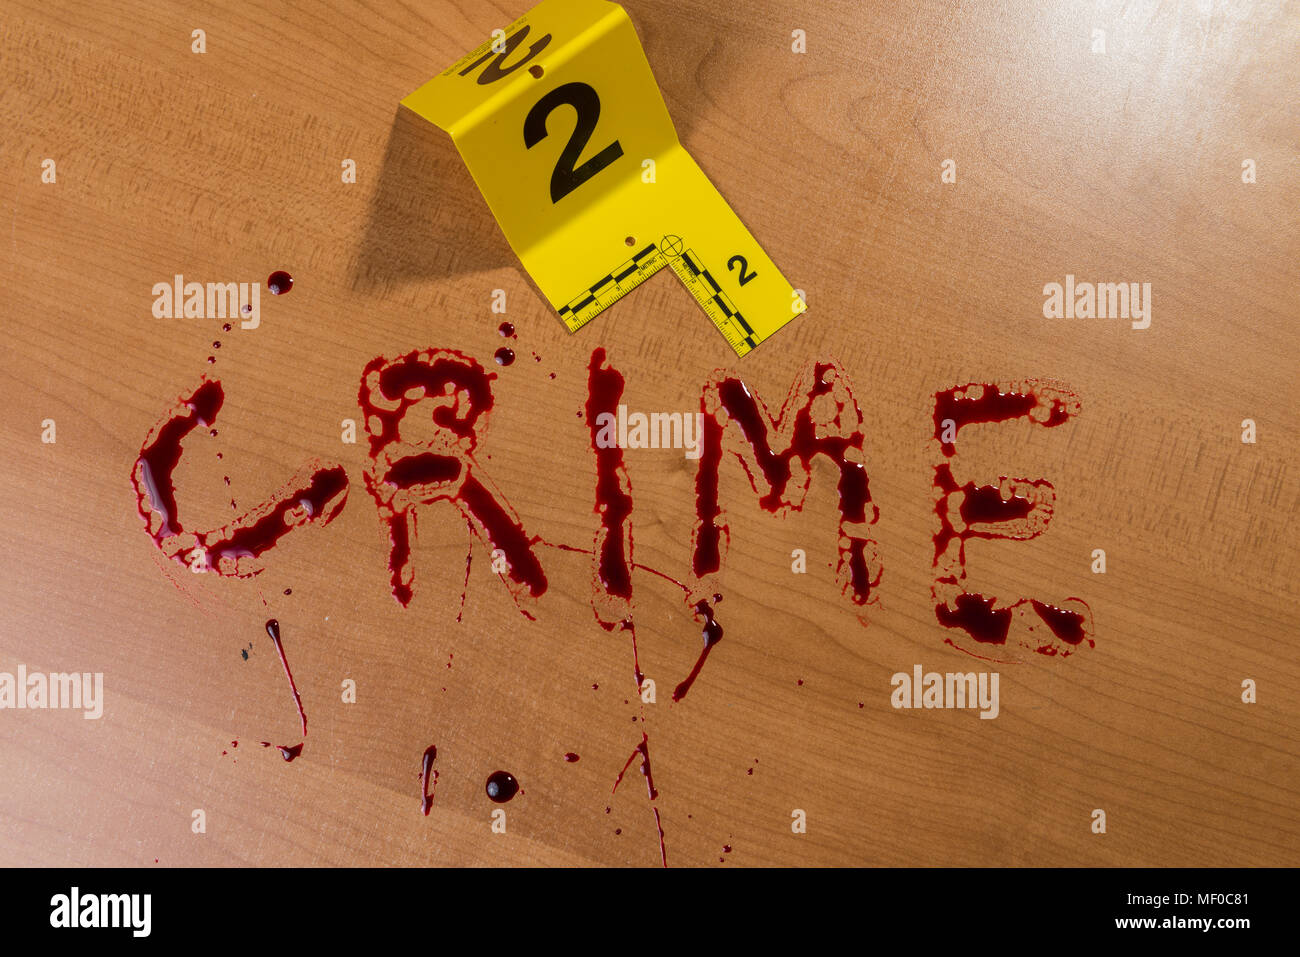 Das Wort „Verbrechen“ steht in Blut auf einer Holzoberfläche neben einem blutigen Messer, die beide durch Beweismarkierungen am Tatort gekennzeichnet sind. Stockfoto